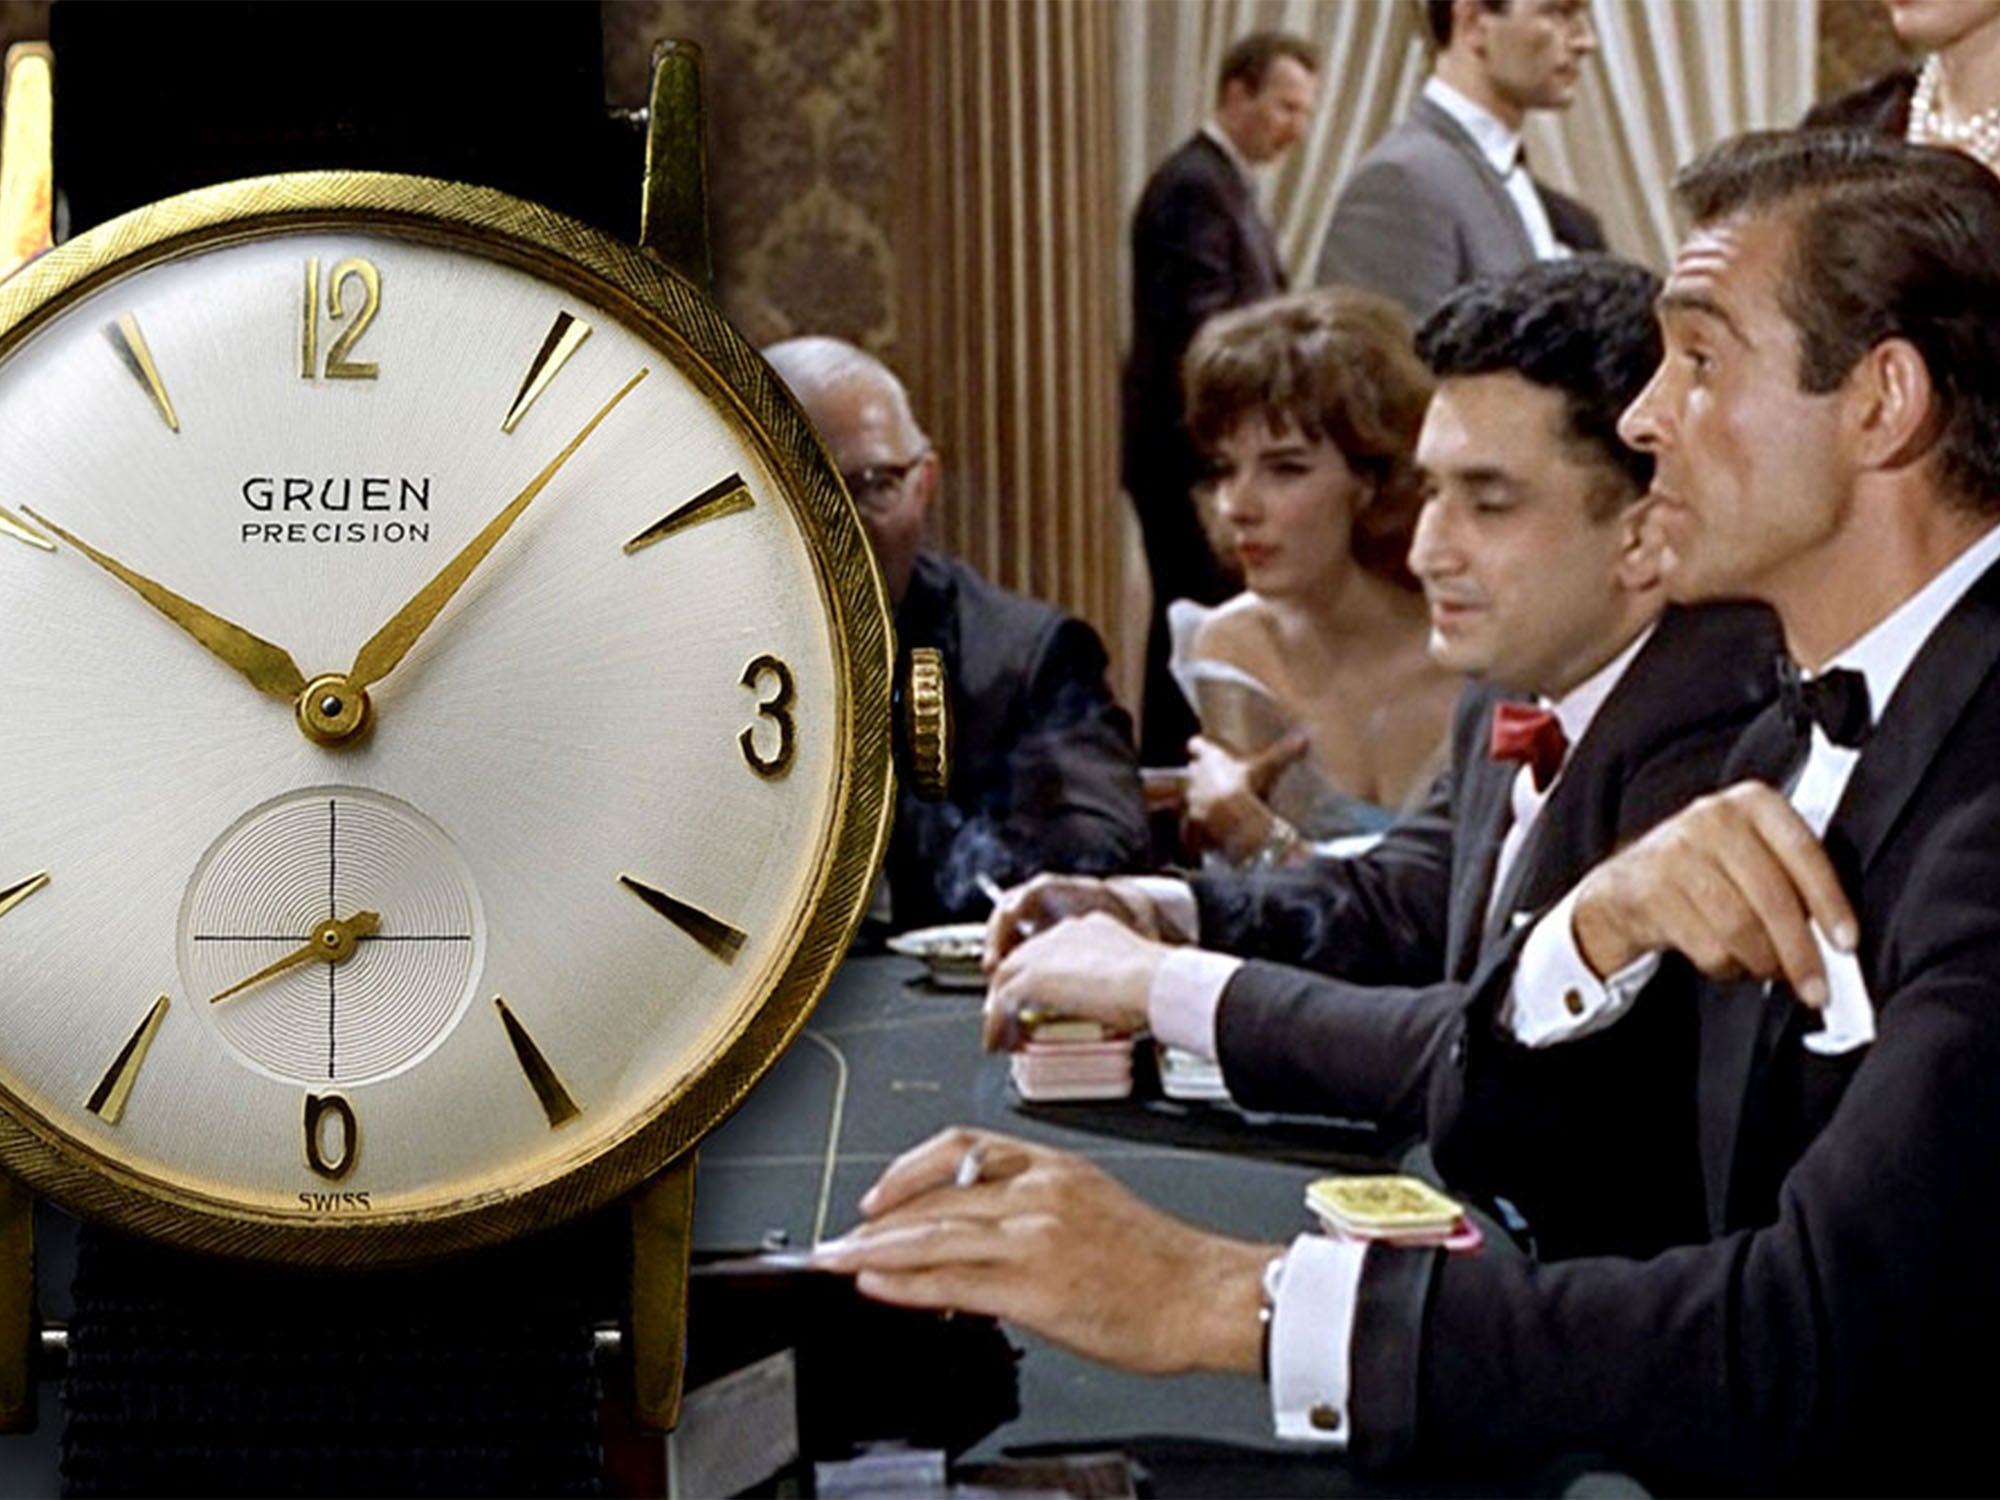 James Bond - Gruen gold watch